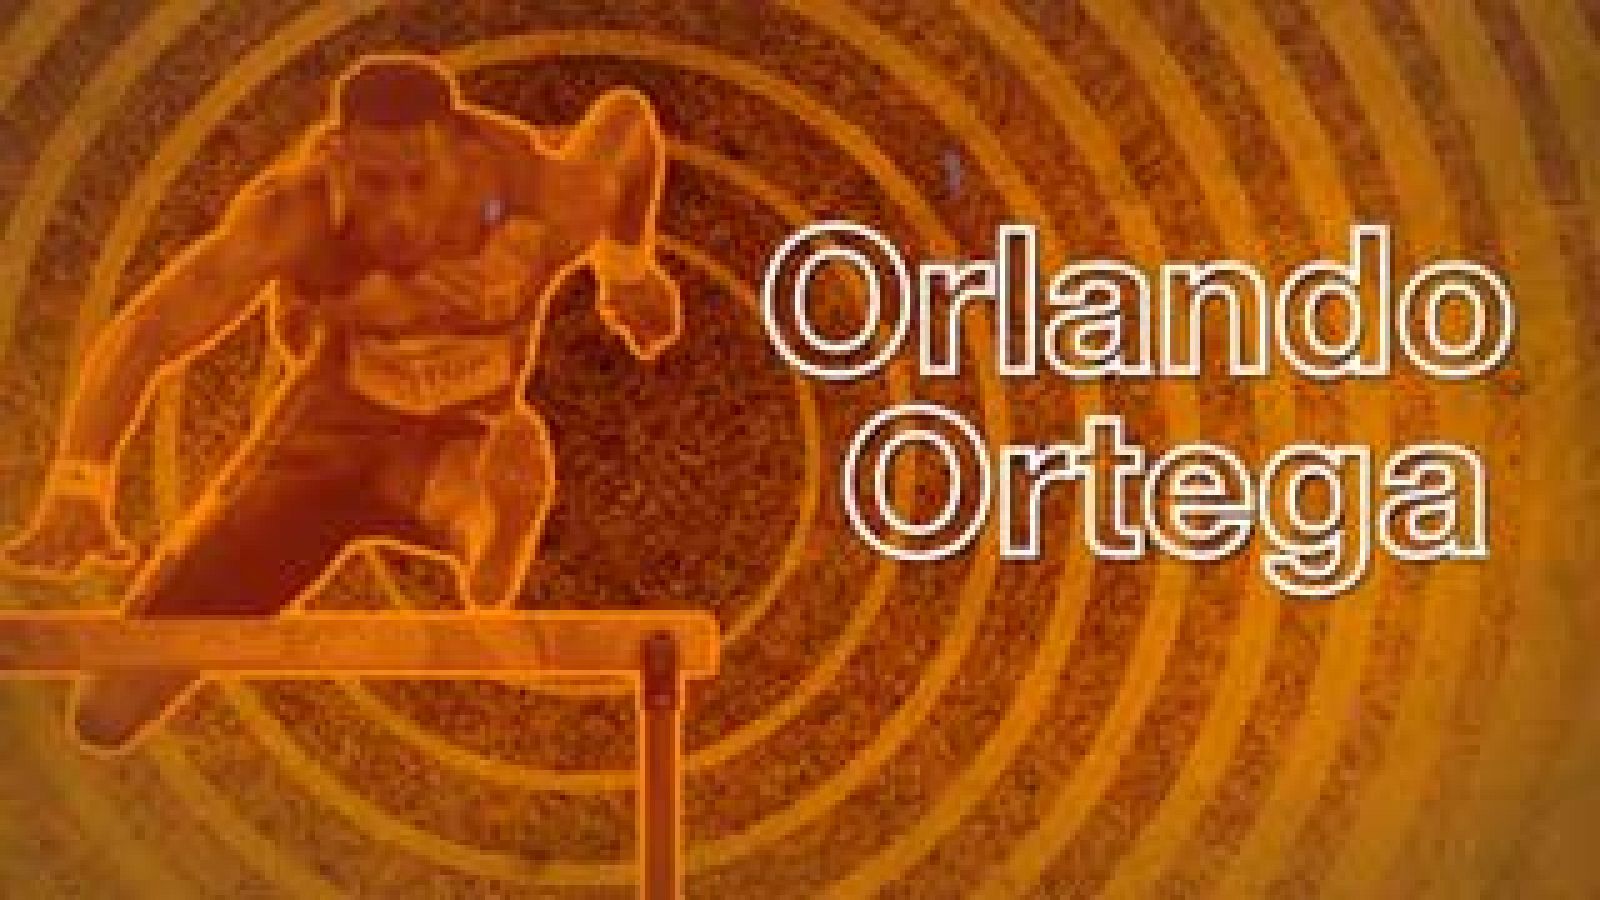 El Despertador: plata para Orlando Ortega y victorias en bádminton y baloncesto